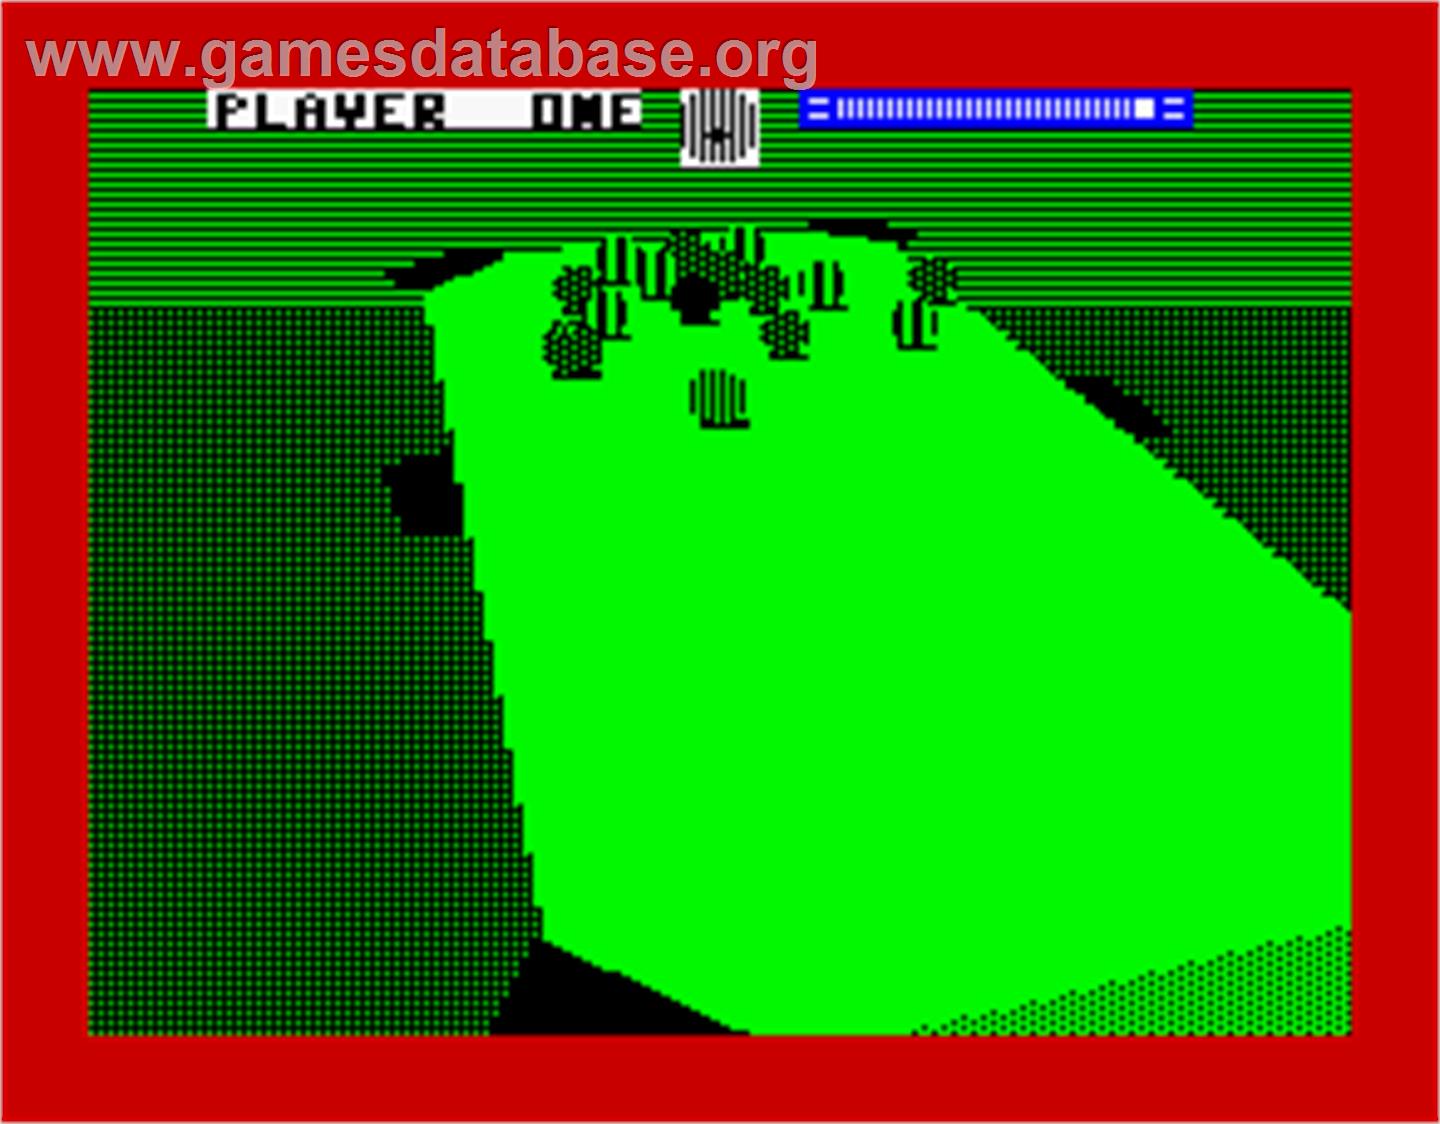 3D Pool - Sinclair ZX Spectrum - Artwork - In Game